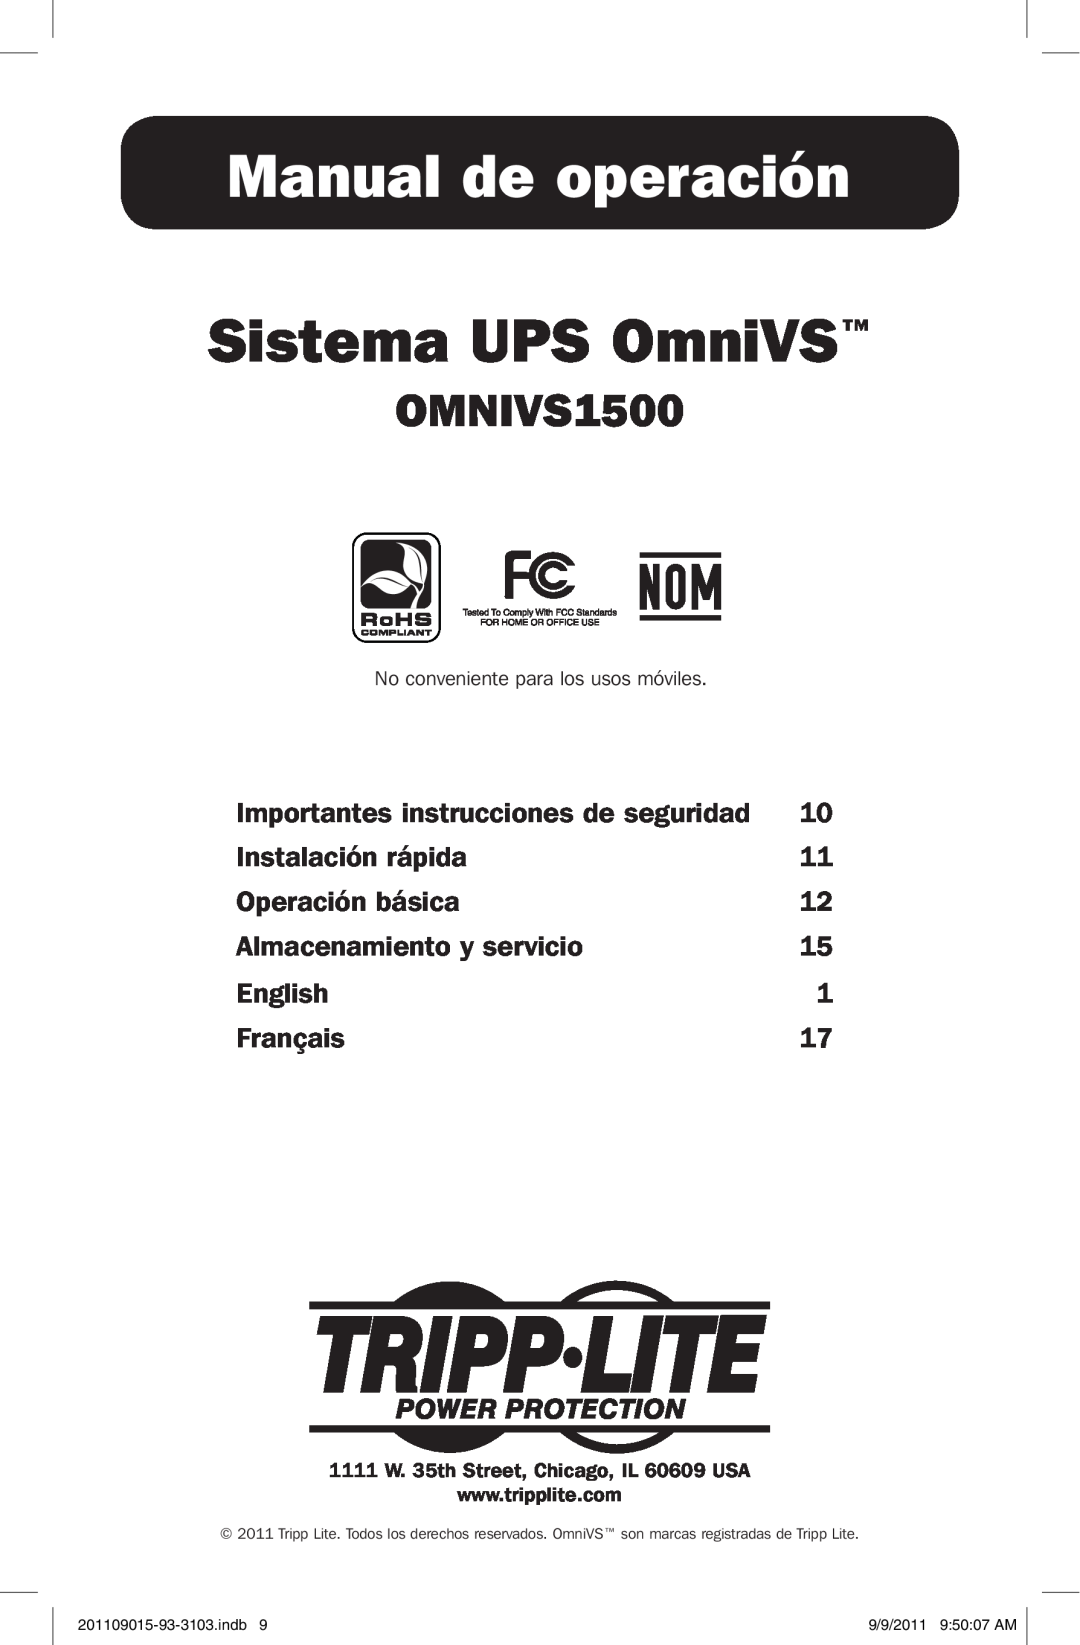 Tripp Lite OMNIVS1500 Manual de operación, Sistema UPS OmniVS, Importantes instrucciones de seguridad, Instalación rápida 